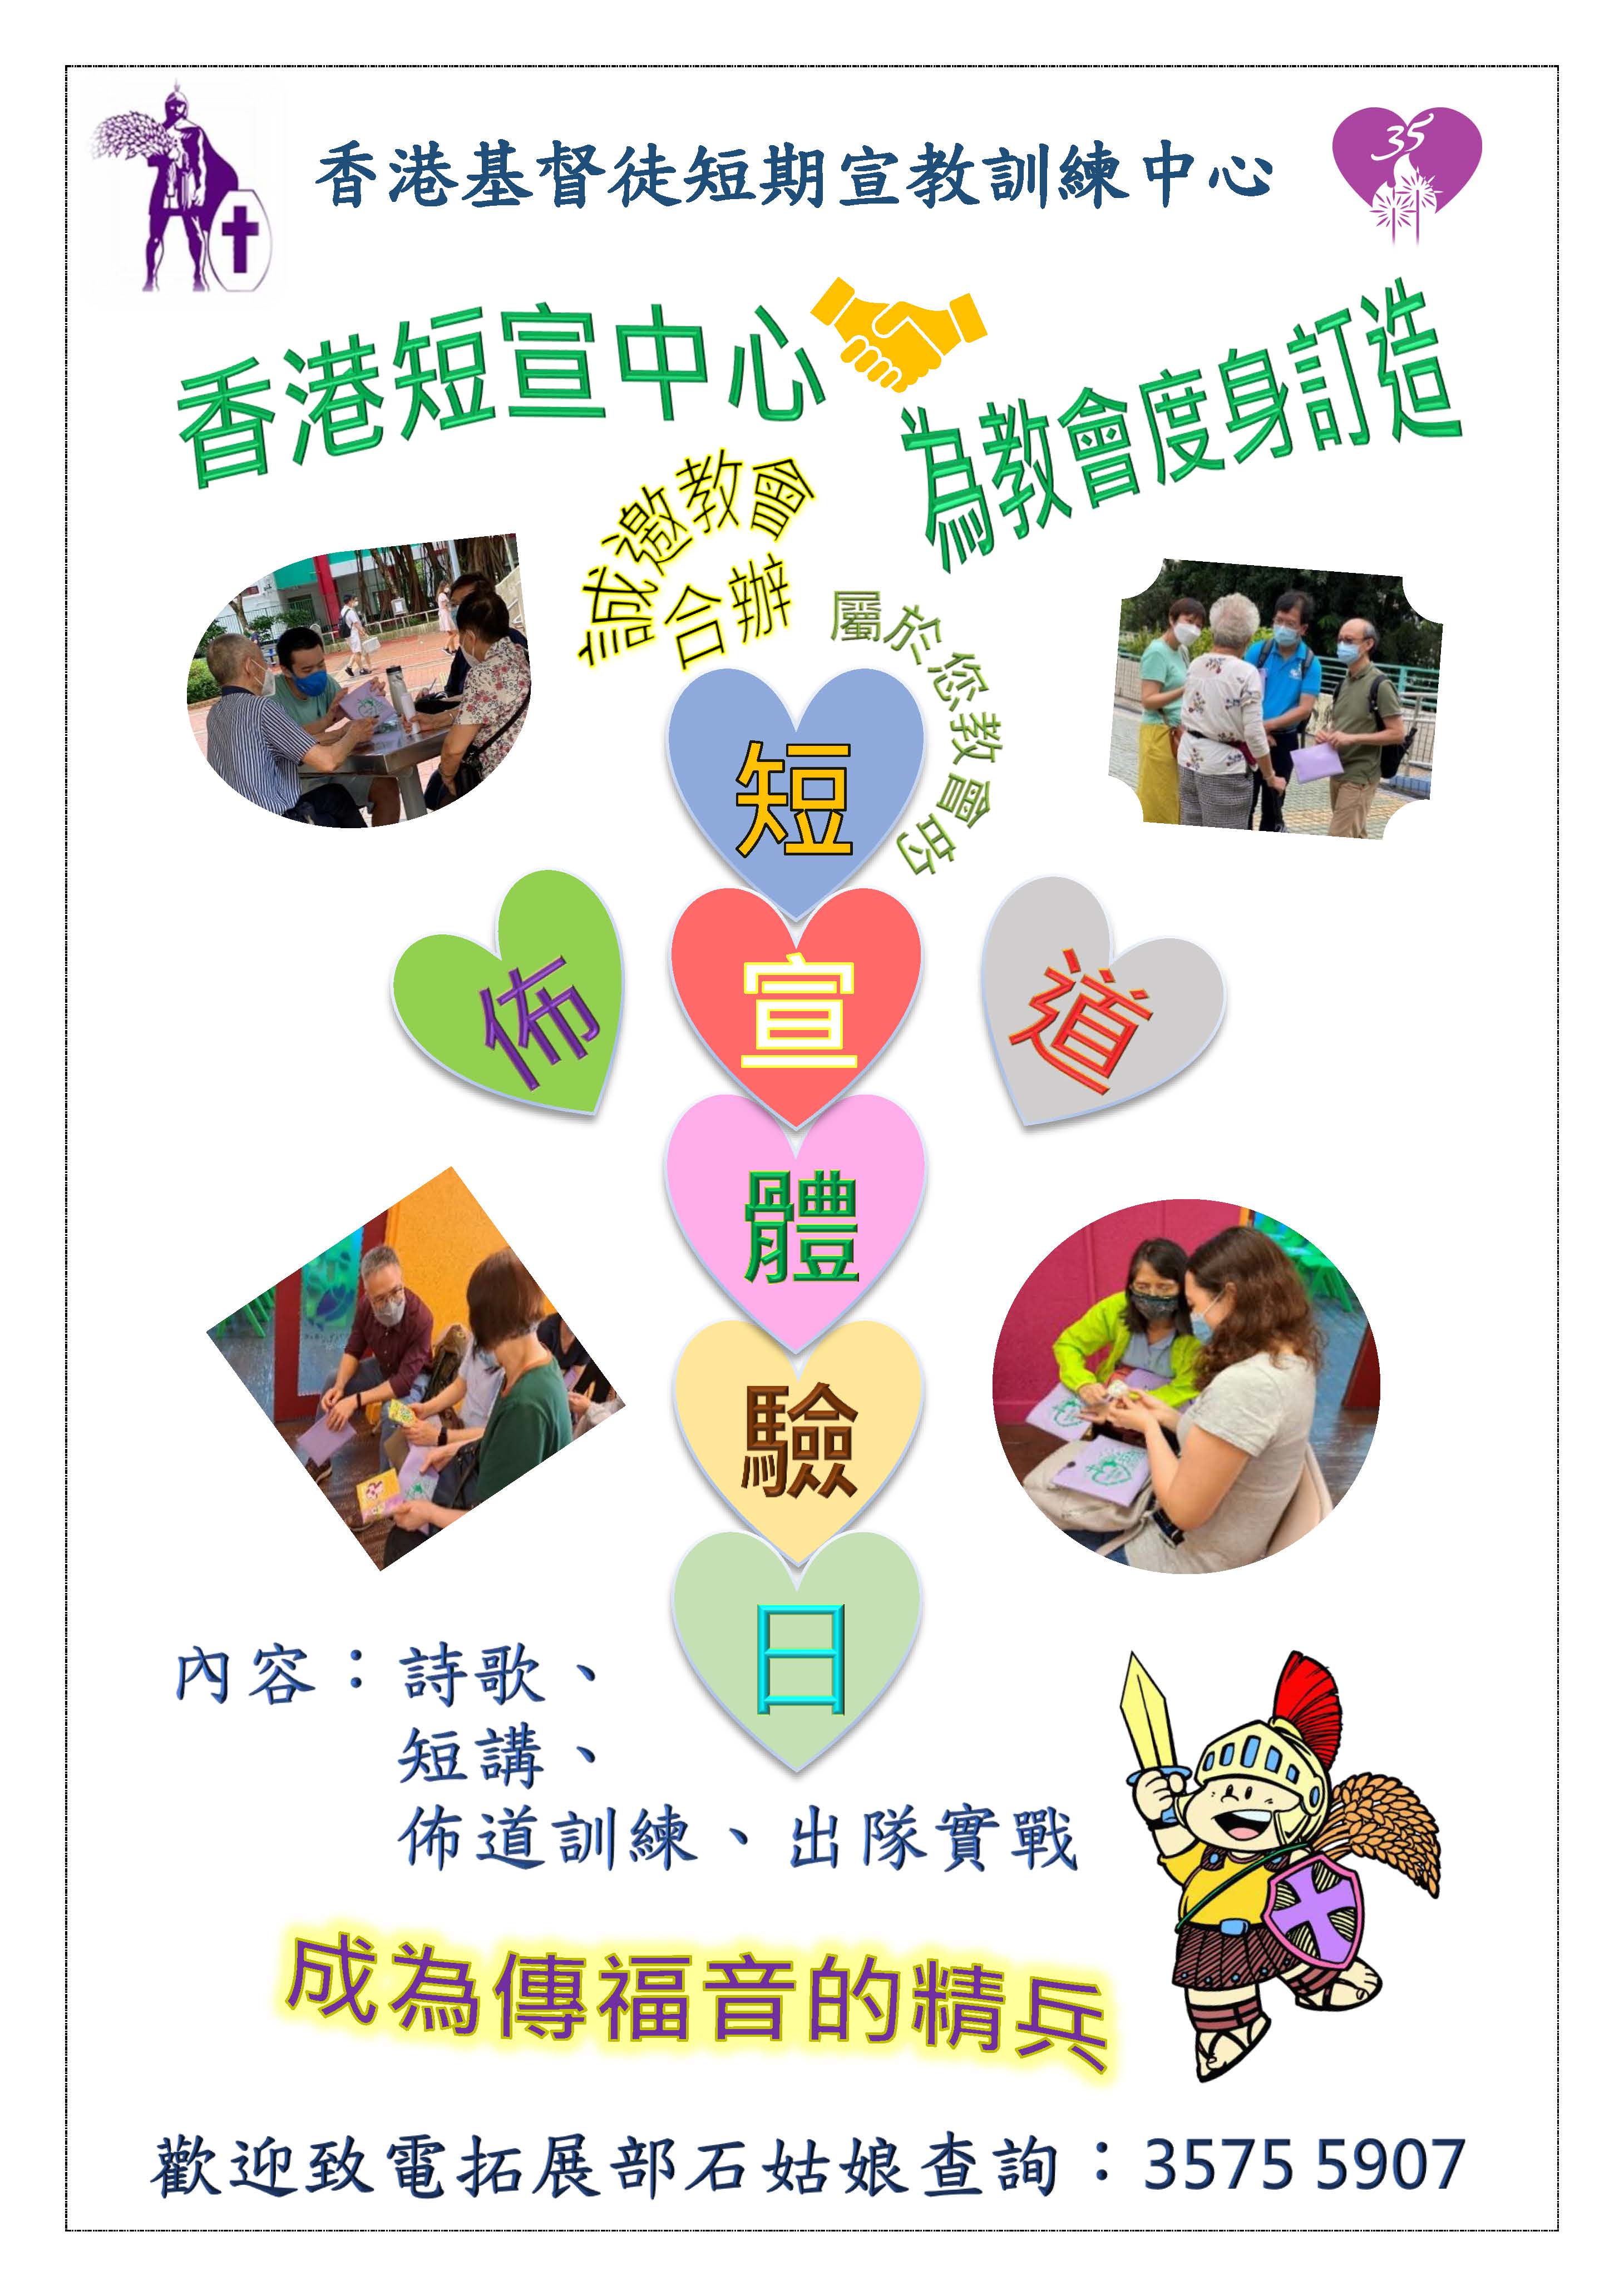 香港短宣中心為教會度身訂造短宣佈道體驗日